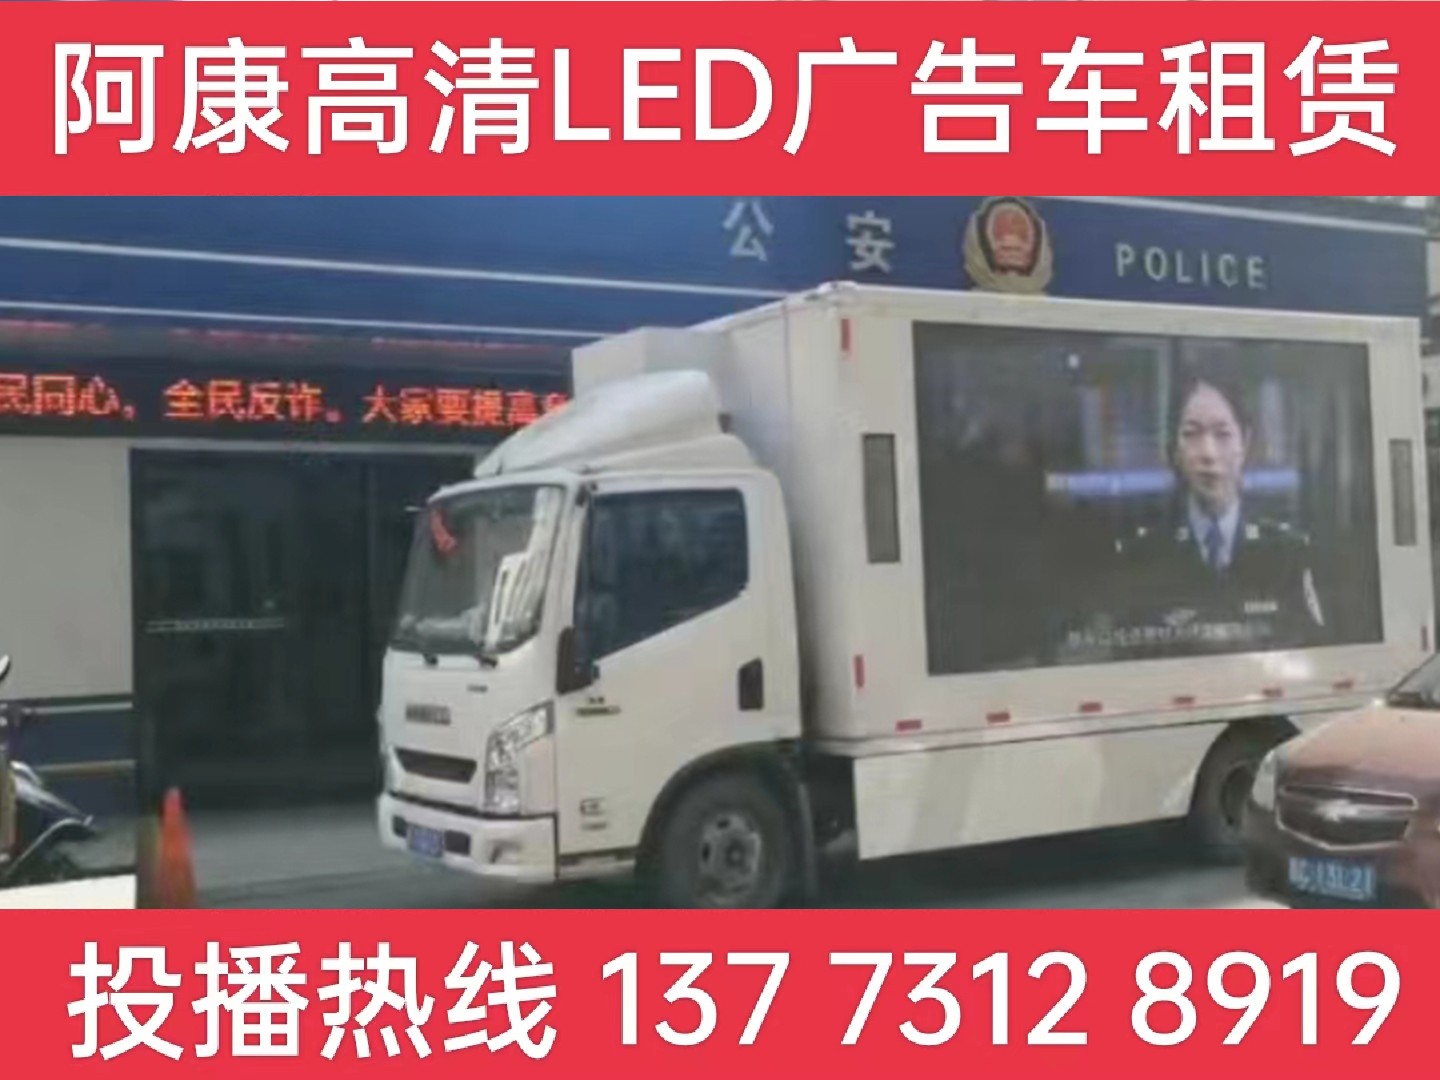 丹阳LED广告车租赁-反诈宣传